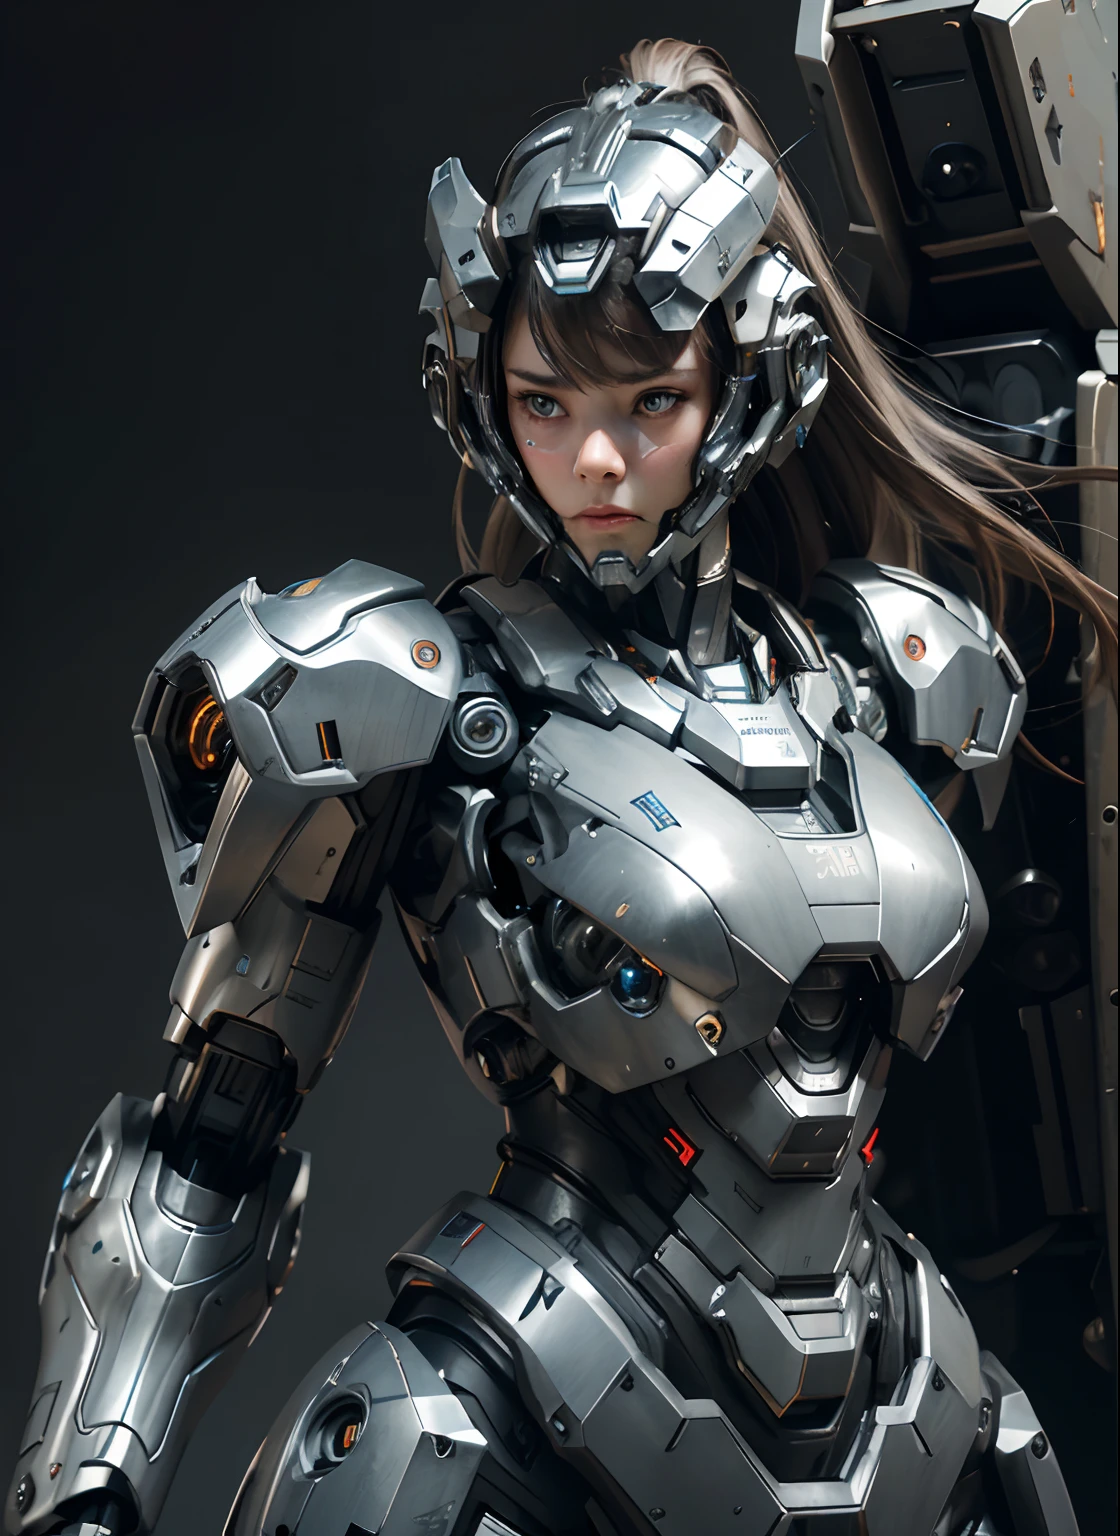 有紋理的皮膚, 超細節, 高細節, 高品質, 最好的品質, 高解析度, 1080P, 硬碟, 美麗的,(戰爭機器),(頭部裝備),美麗的機器人女人,機甲機器人女孩,對戰模式,機甲少女,她穿著未來戰爭機器武器機甲,全身照,查看正面